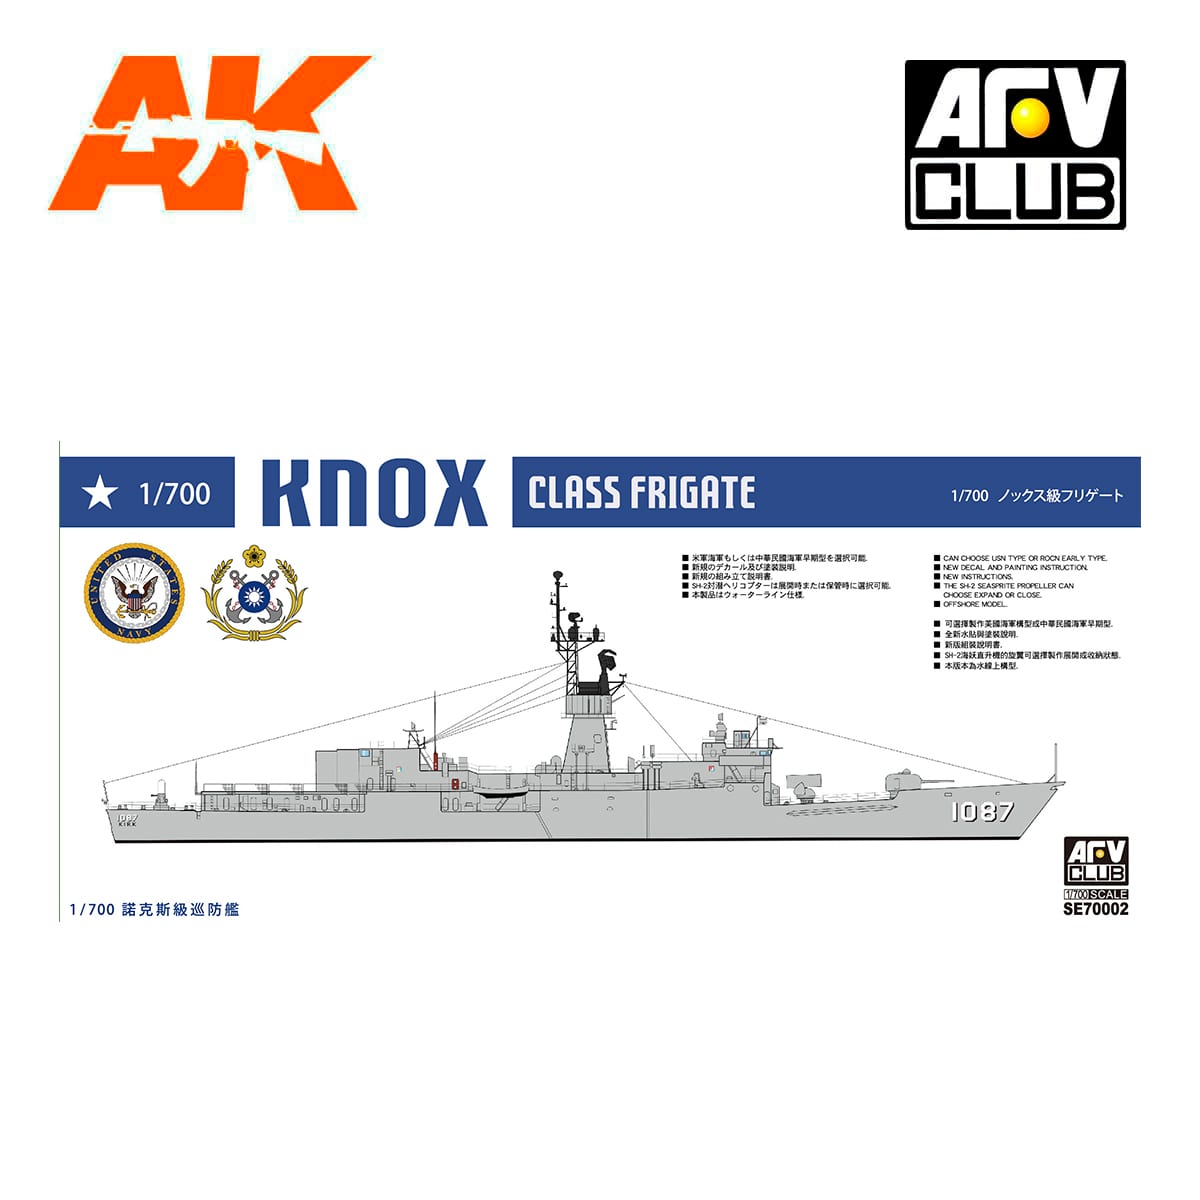 Knox-Class Frigate FF-1073 Robert 1/700